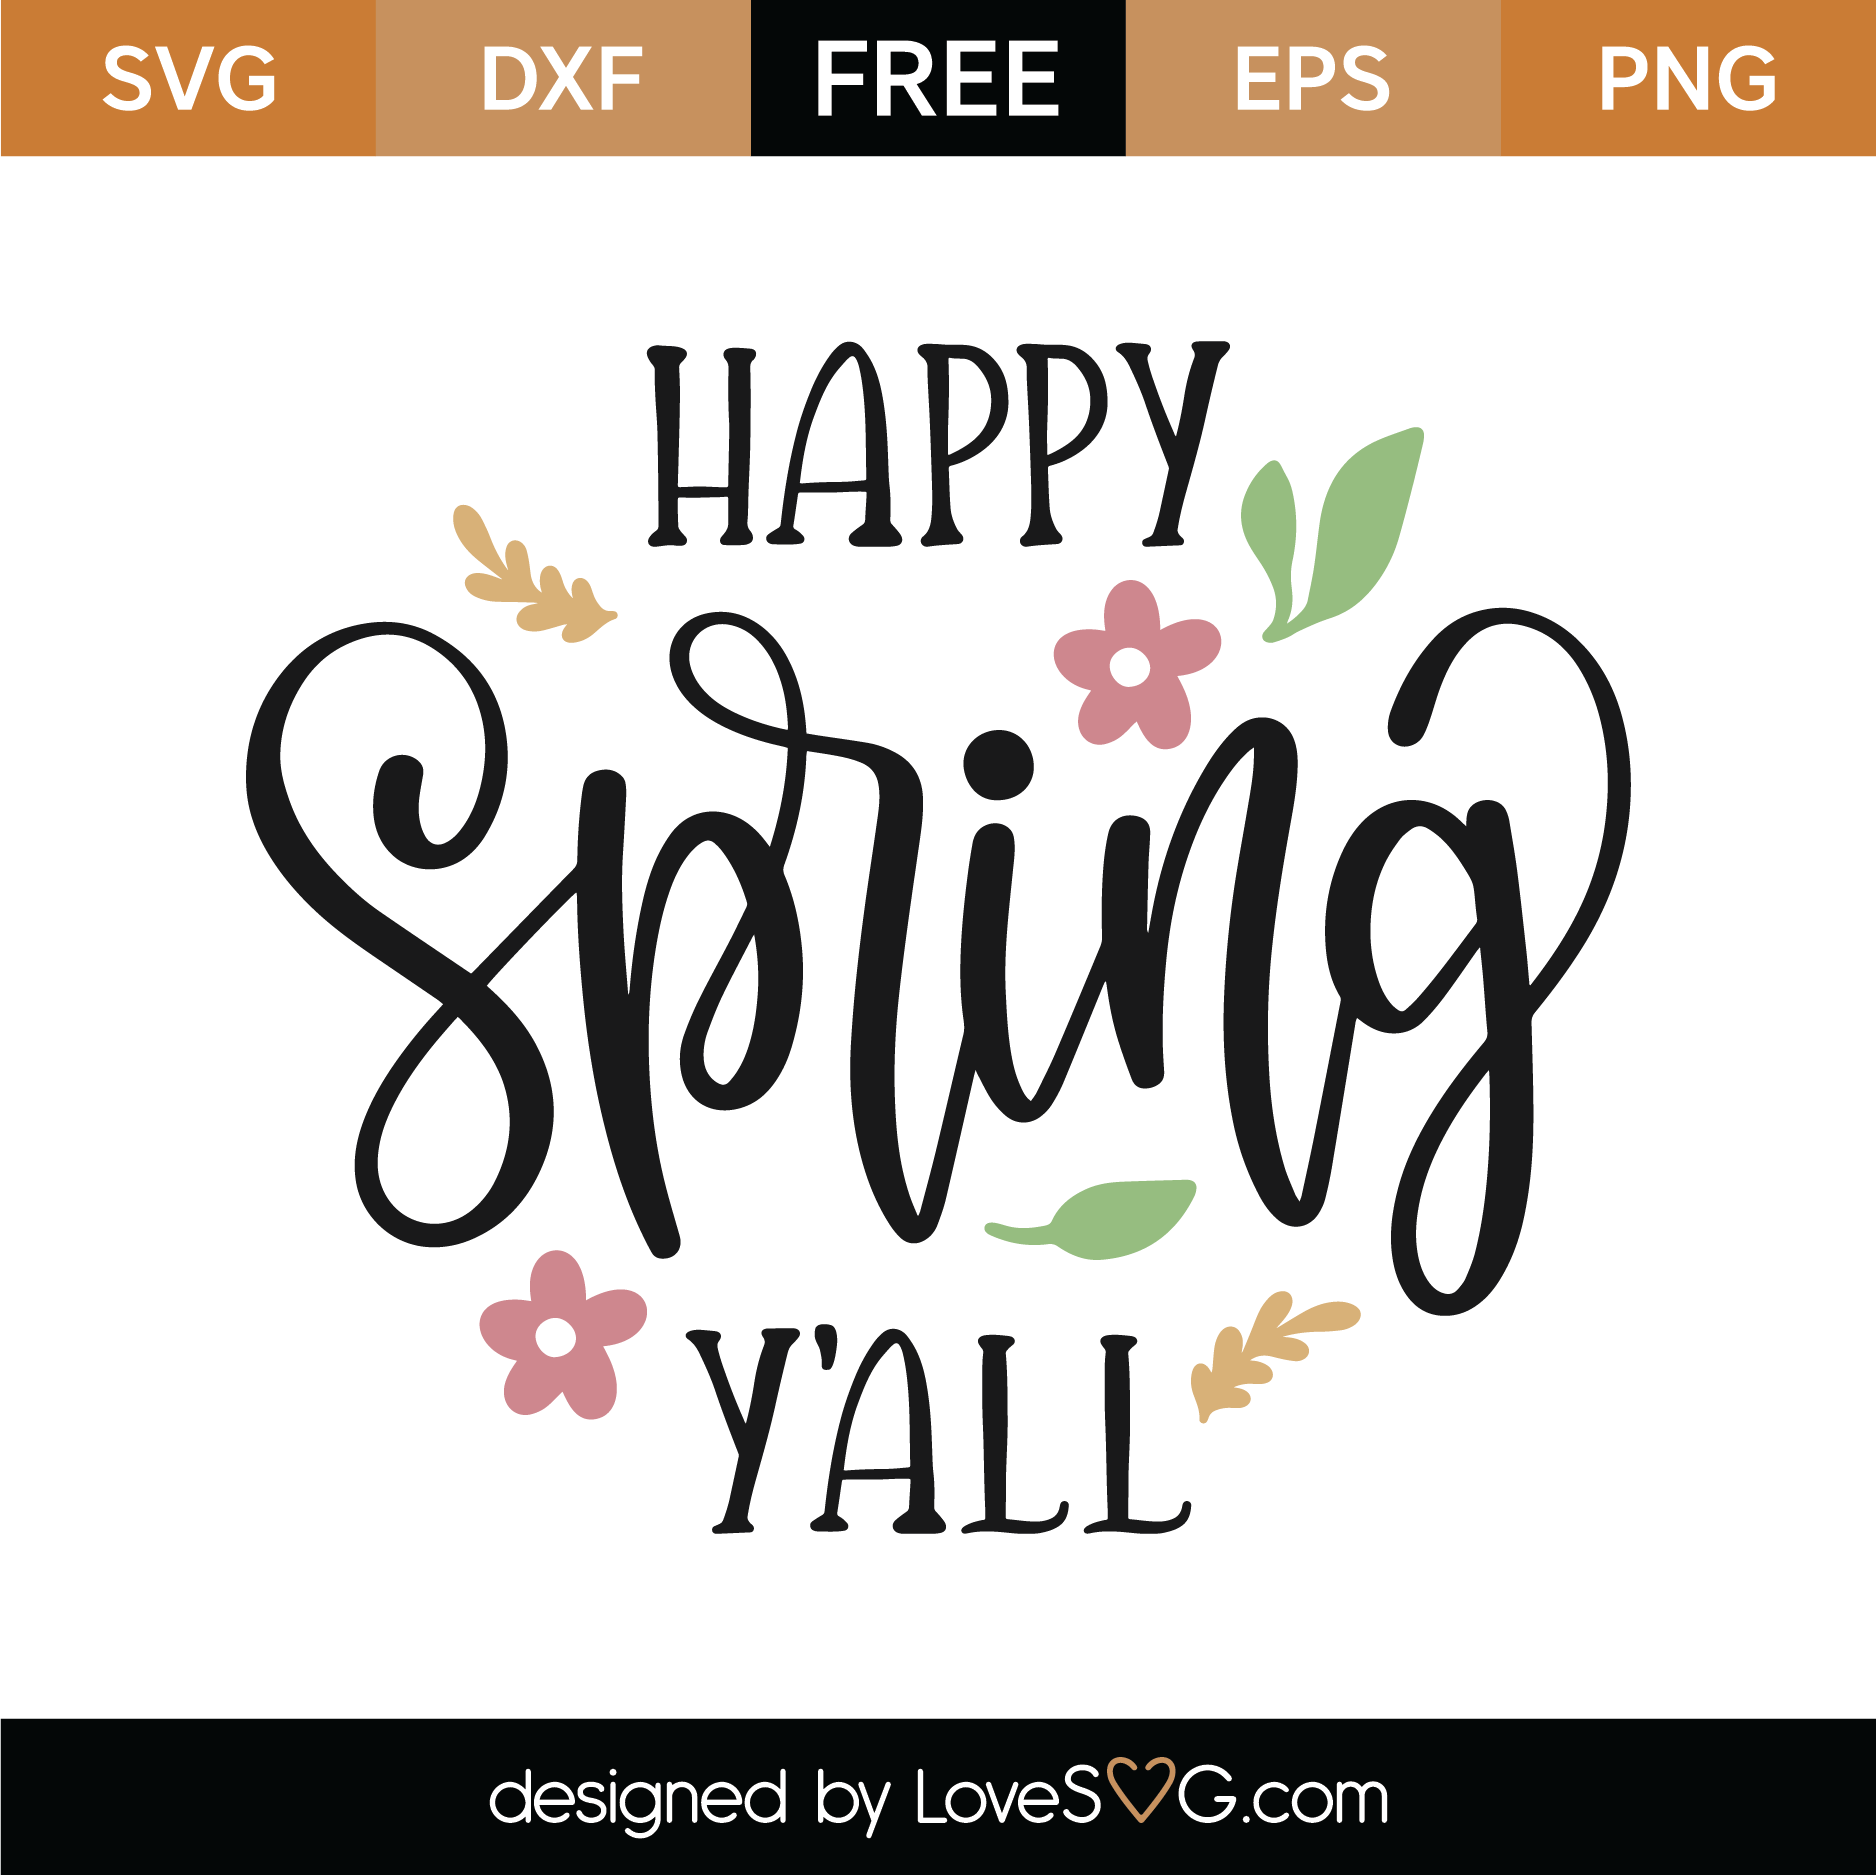 Download Free Happy Spring Y'all SVG Cut File | Lovesvg.com